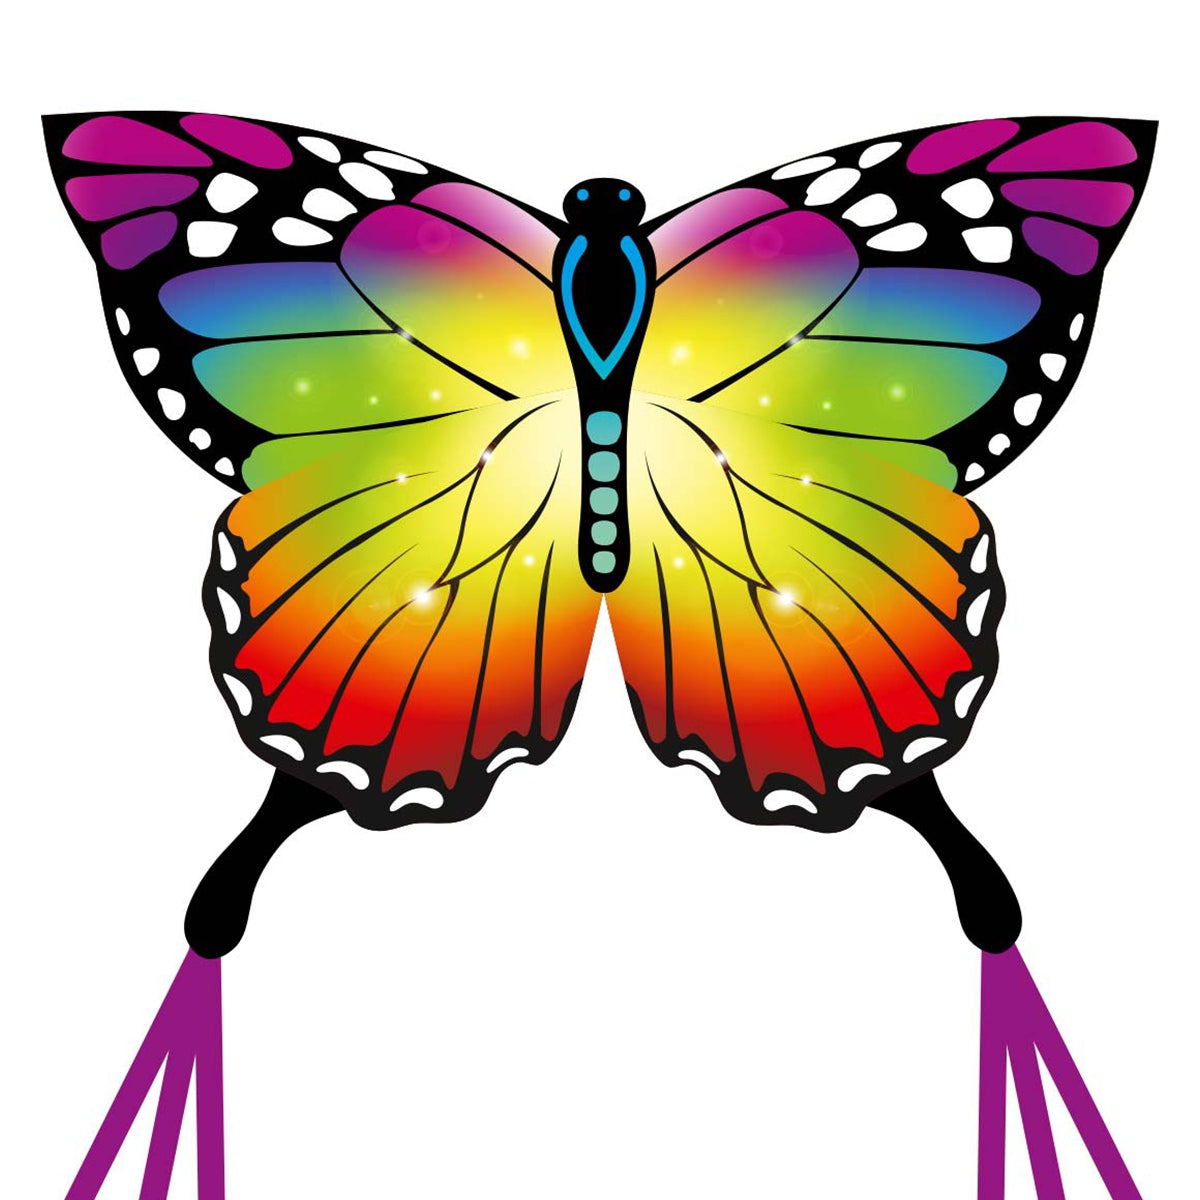 Kinderdrachen Einleiner Drachen HQ Butterfly Kite Rainbow Schmetterling Flugdrache